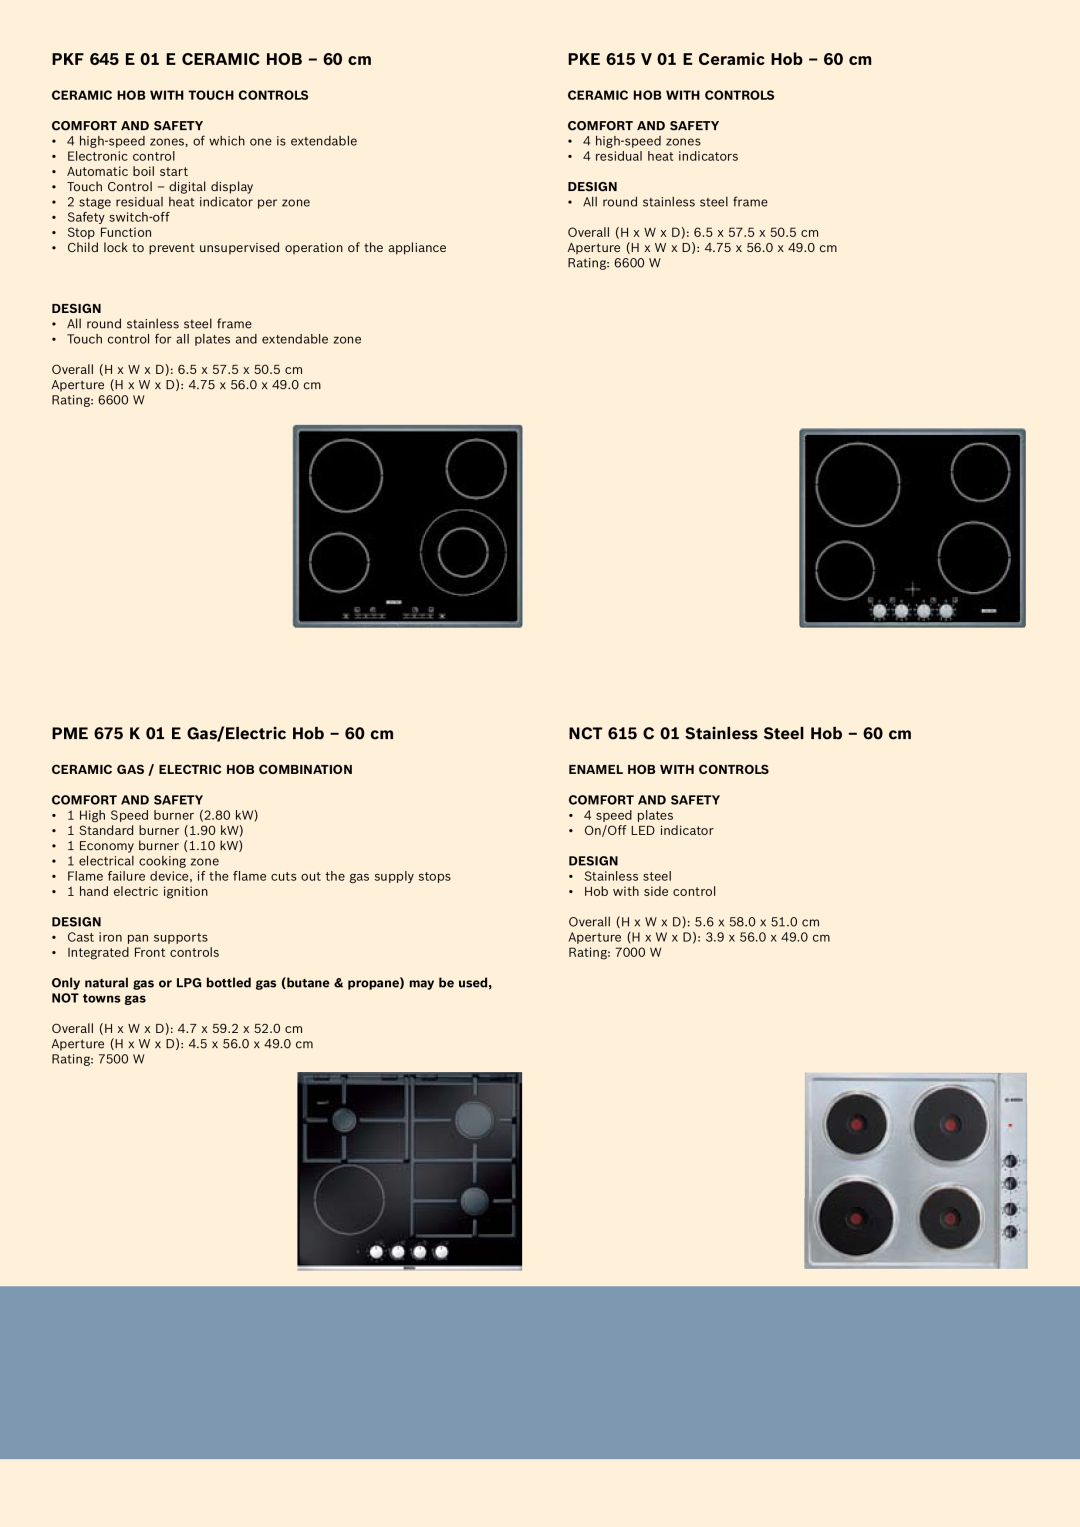 Bosch Appliances Oven Carriage manual PKF 645 E 01 E Ceramic Hob - 60 cm, PKE 615 V 01 E Ceramic Hob - 60 cm 